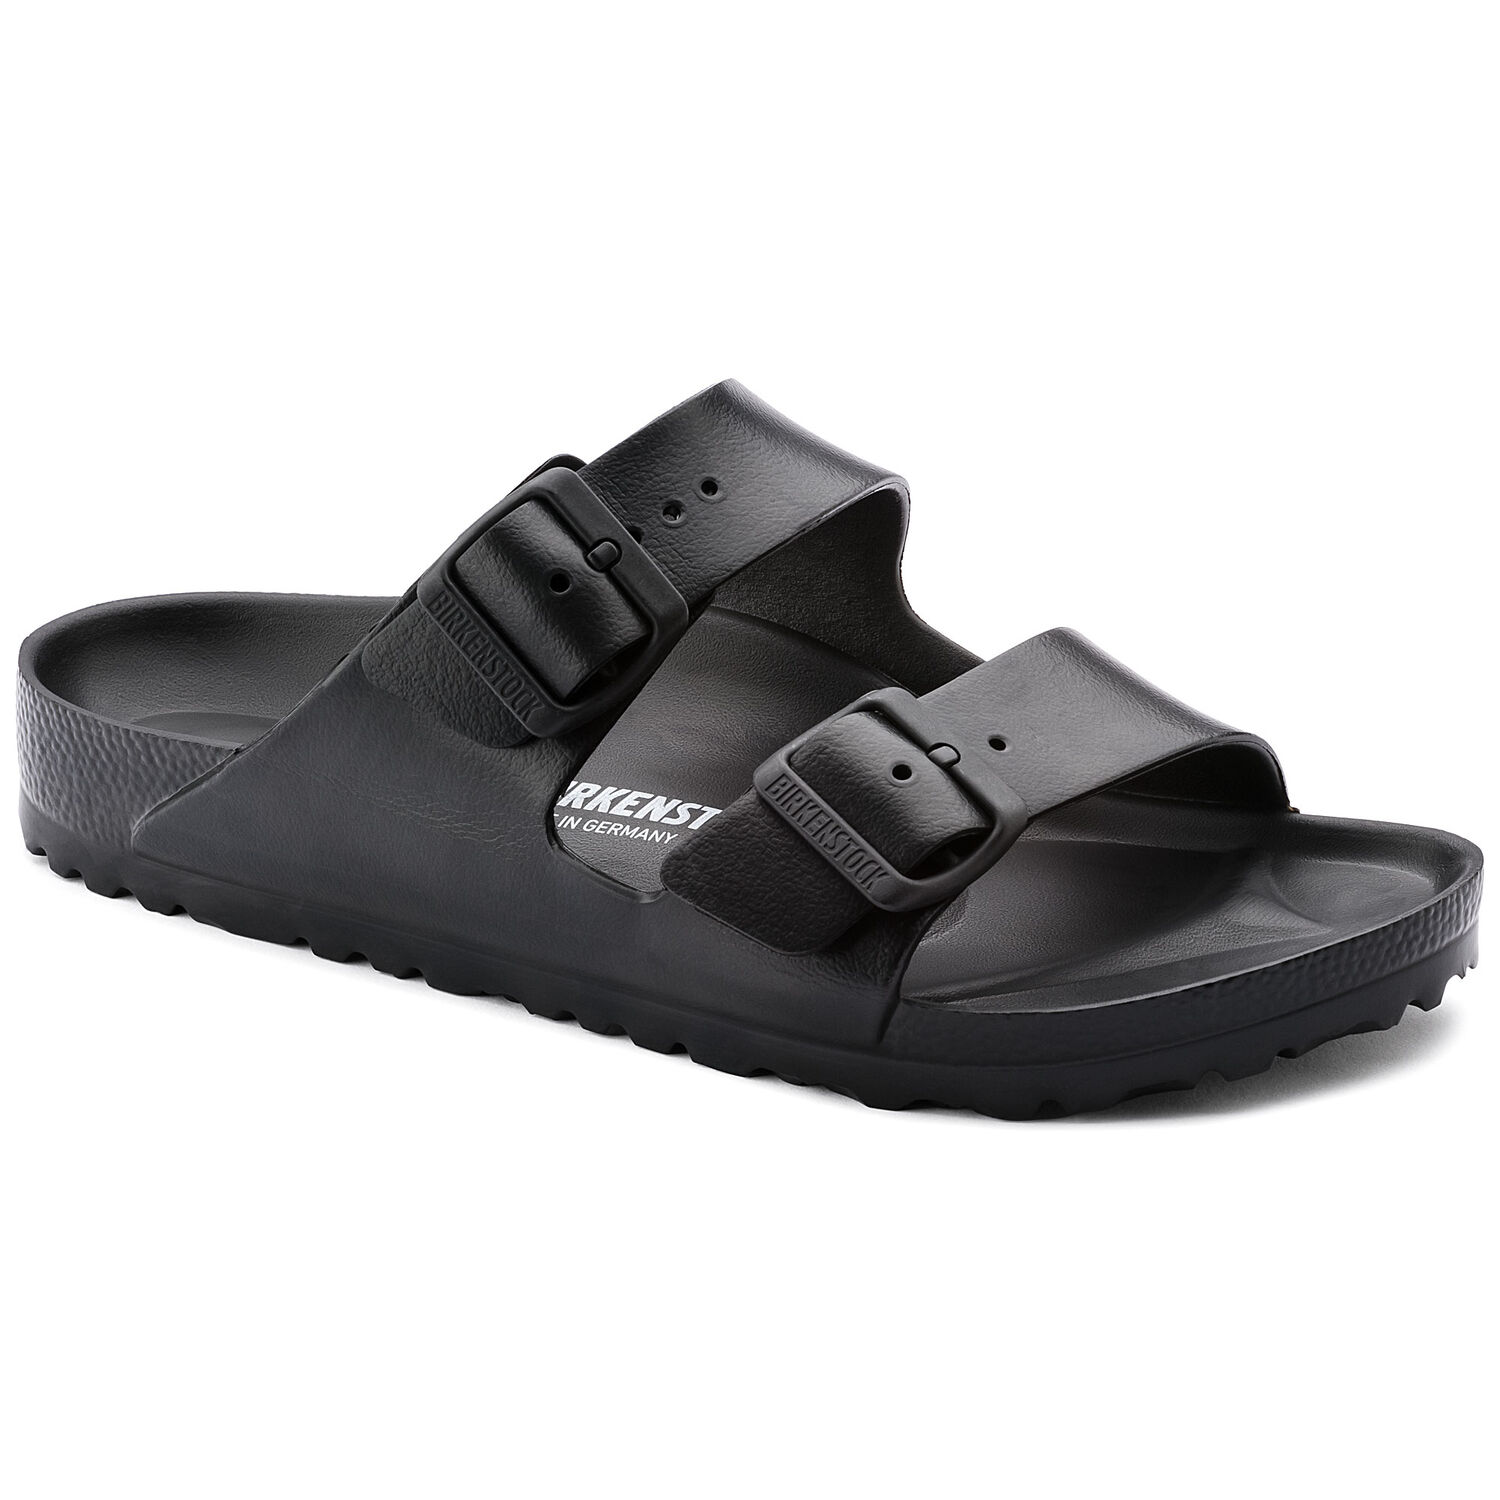 Une paire de sandales Birkenstock Arizona Essentials couleur Noir sur un fond blanc. Les sandales ont une assise anatomique et une semelle extérieure en EVA souple. Les sandales ont deux boucles métalliques pour un ajustement sûr.